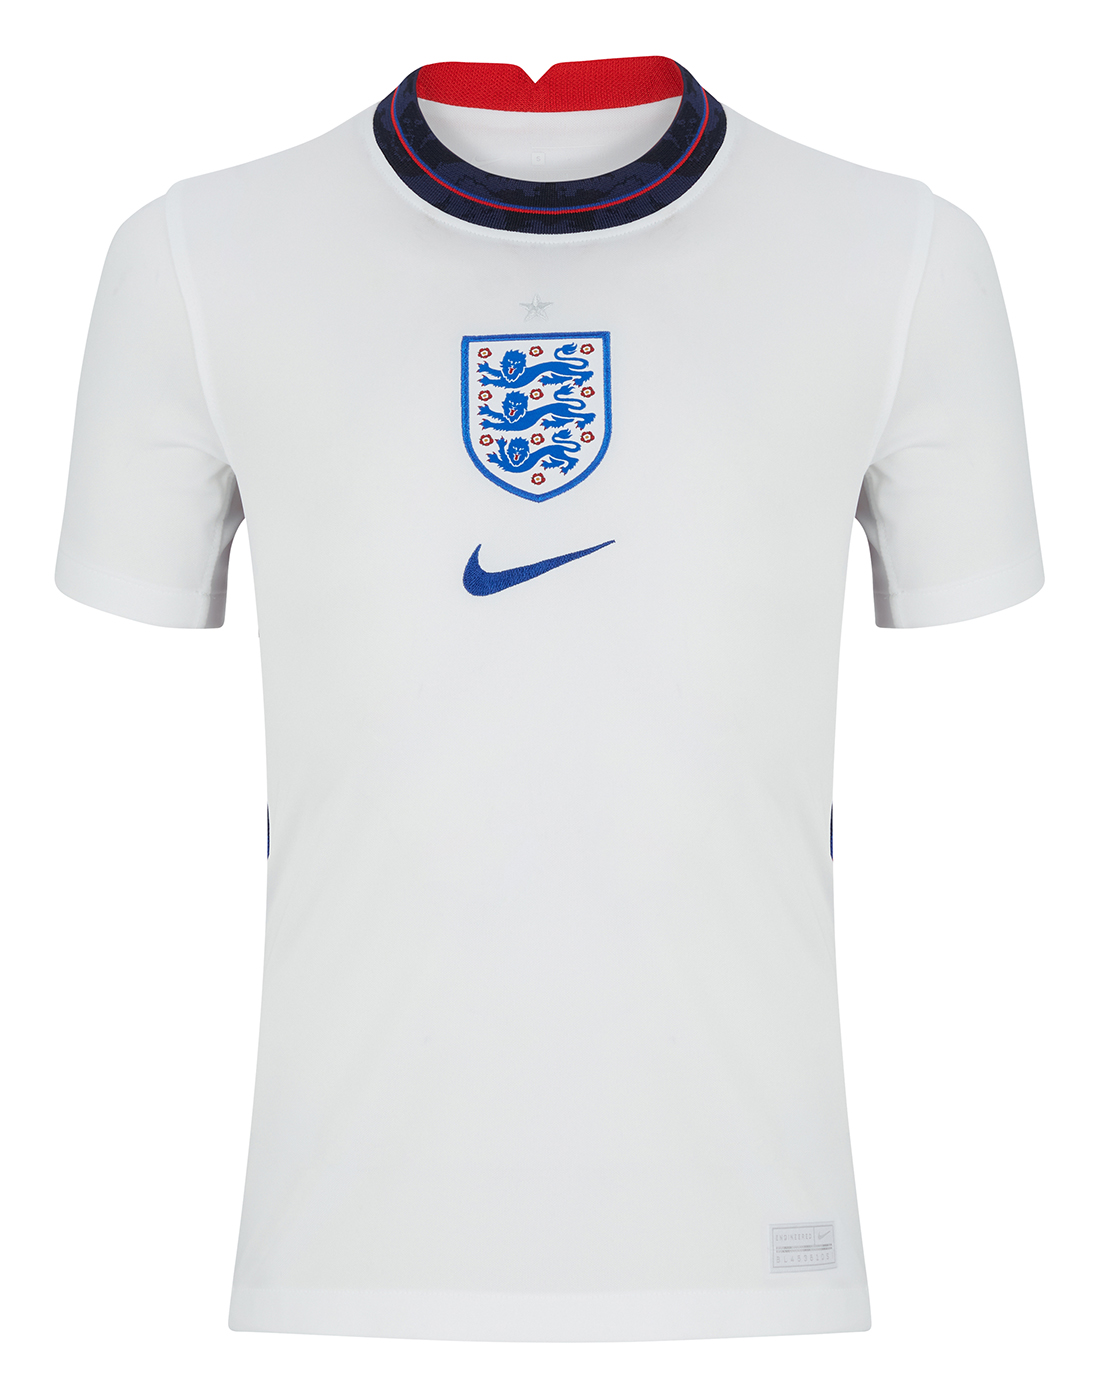 Nike Kids England Euro 2020 Home Jersey 